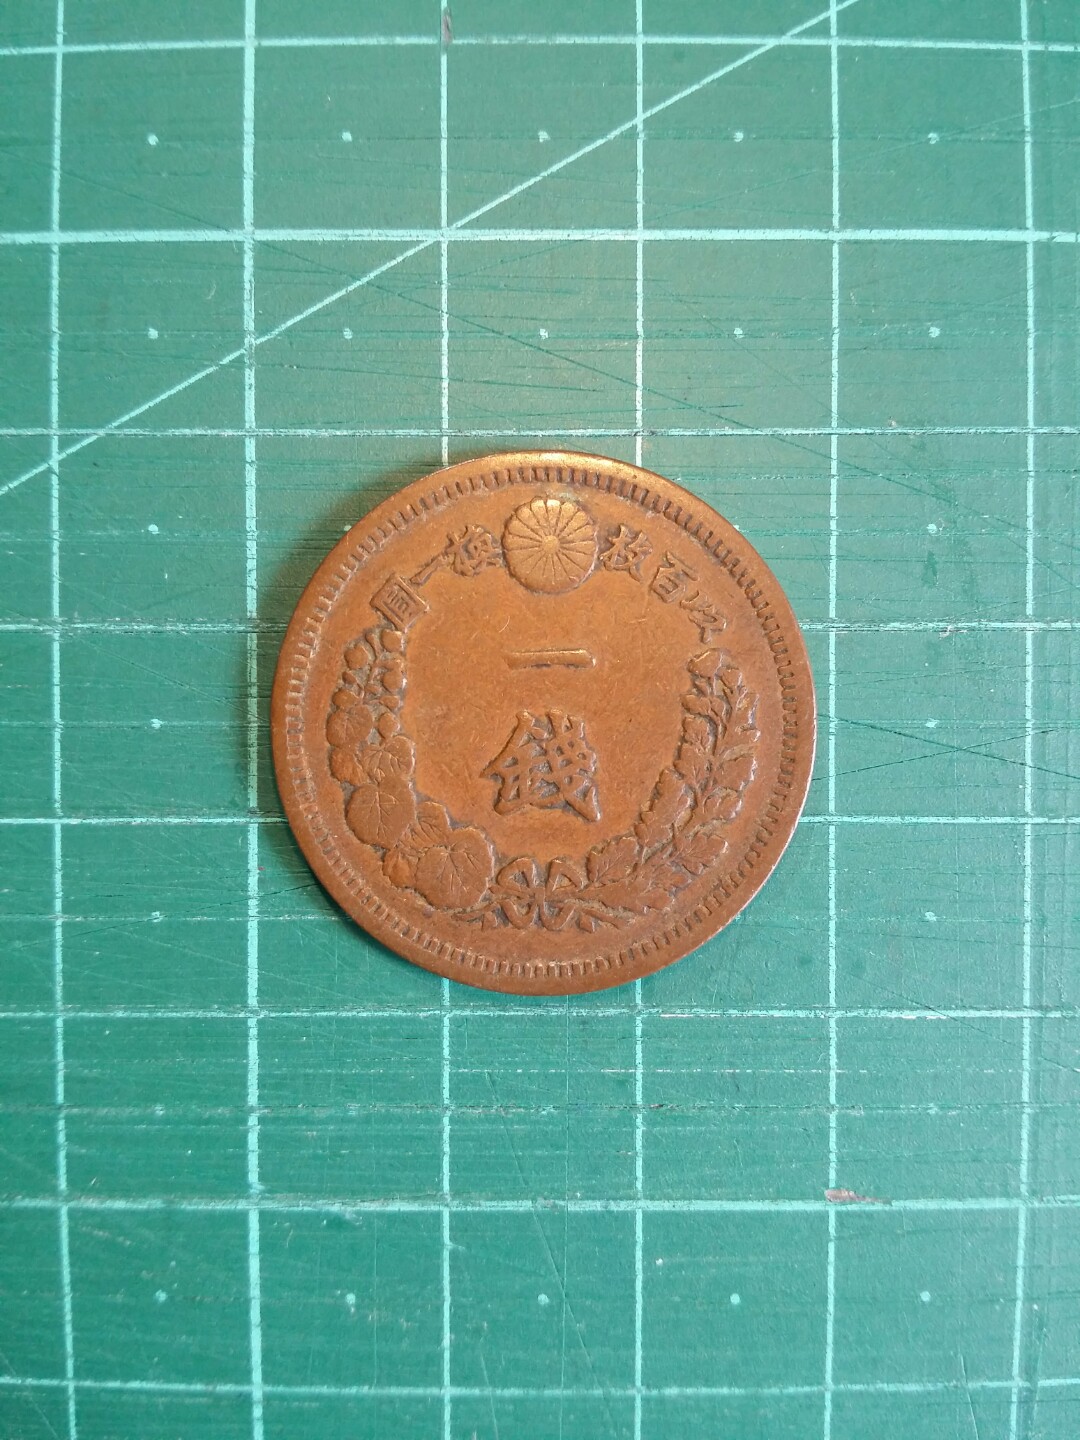 1880(明治13年) 日本一錢硬幣一枚, 興趣及遊戲, 玩具& 遊戲類- Carousell